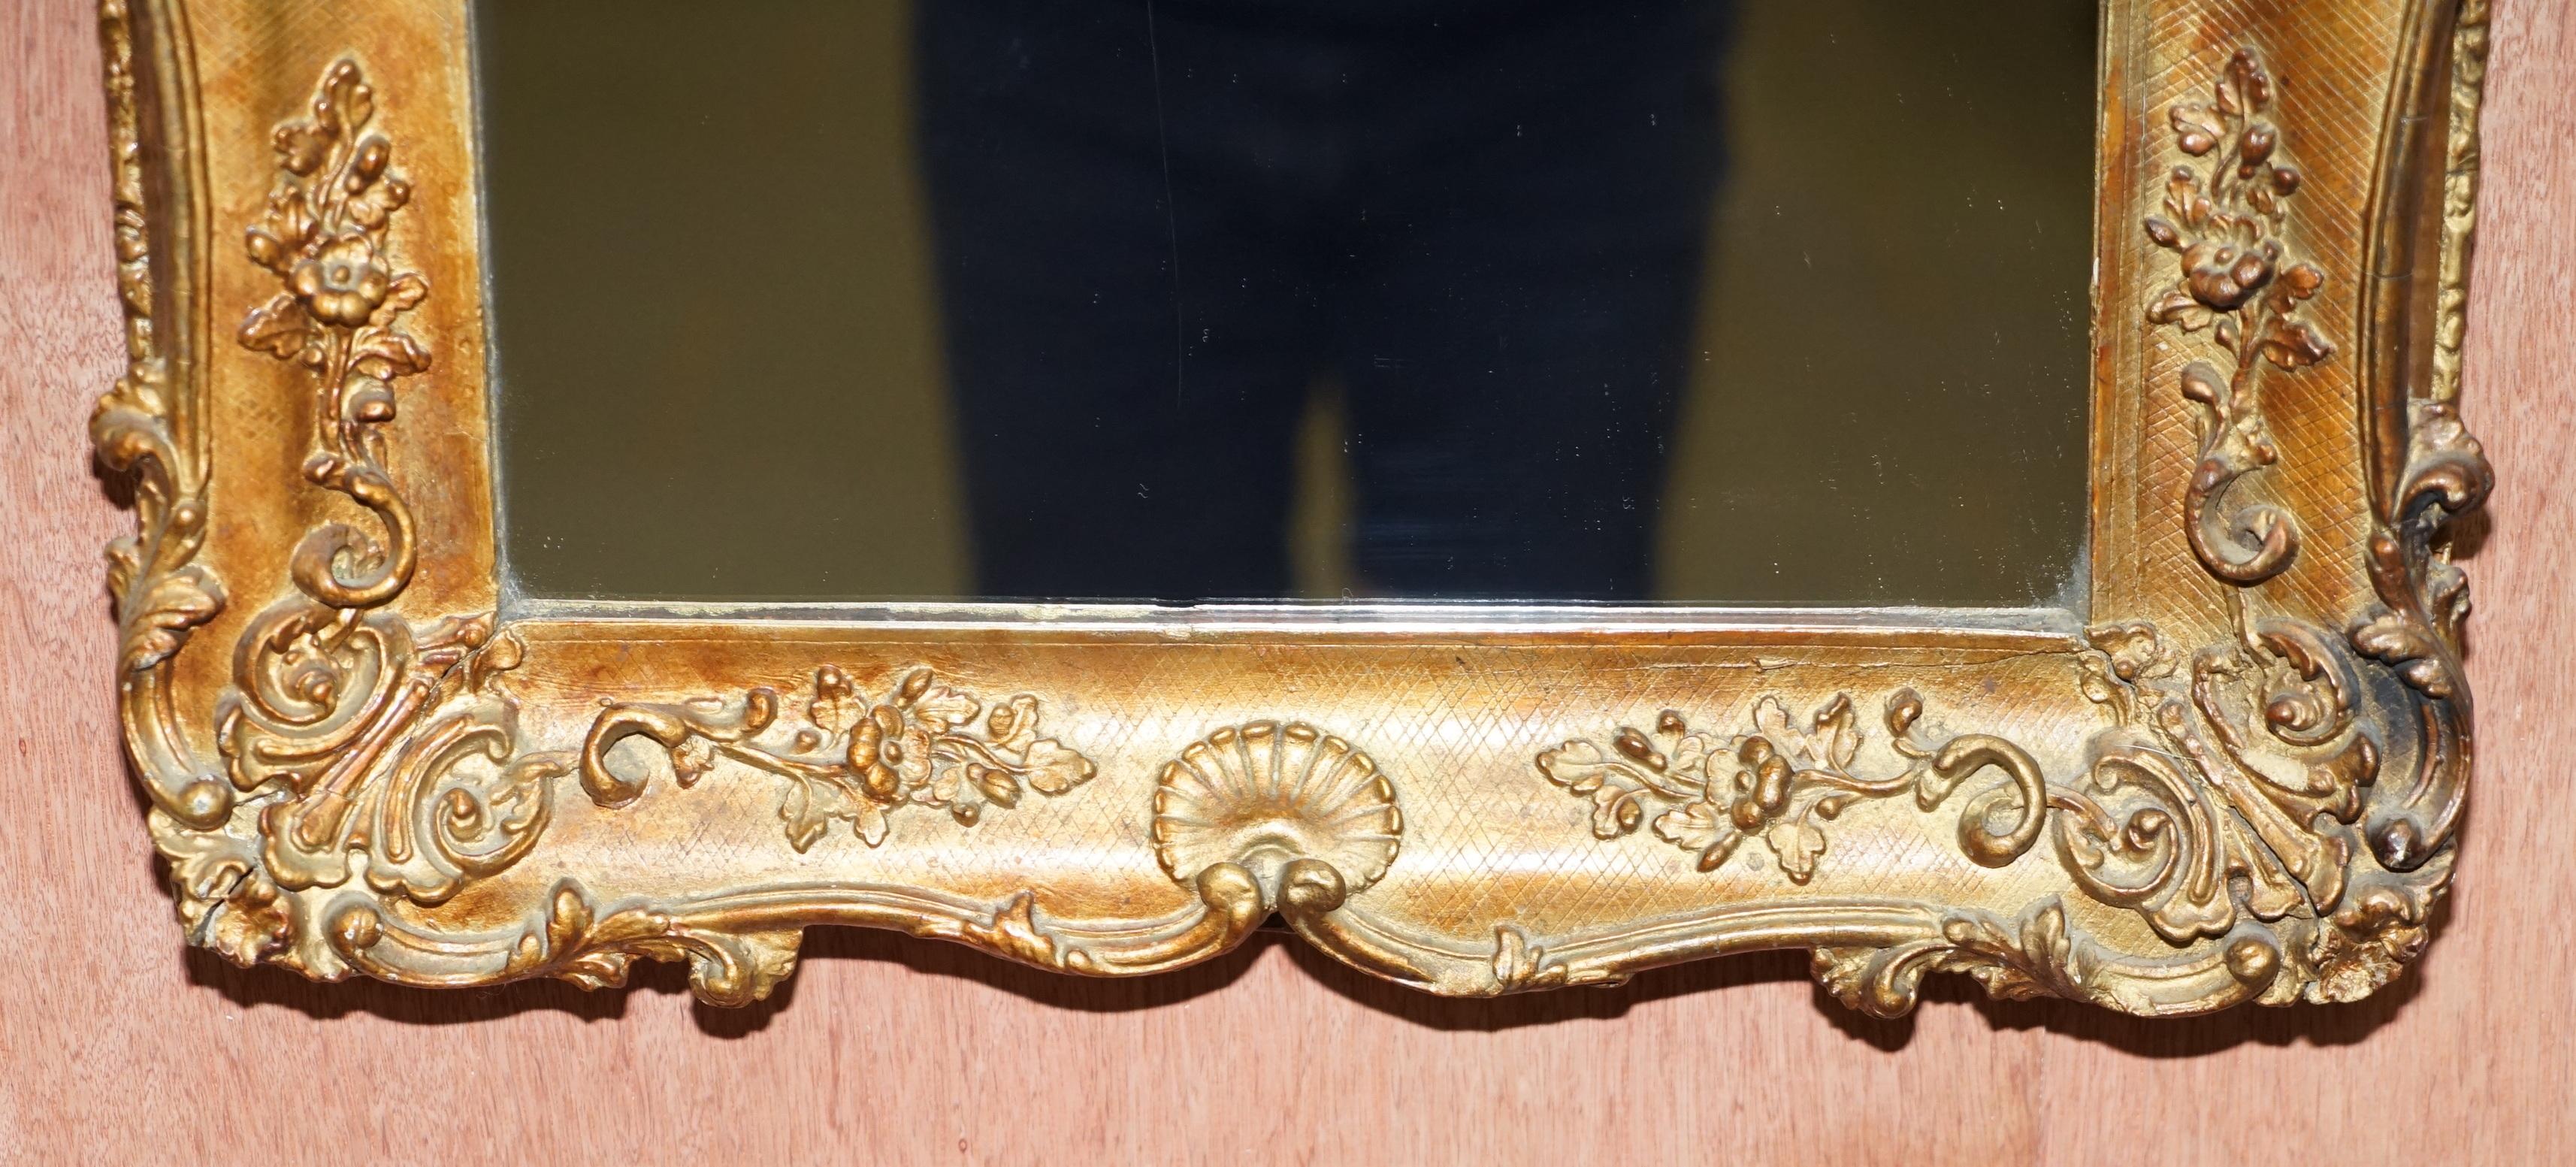 Wir freuen uns, diesen atemberaubenden, kunstvoll geschnitzten, vergoldeten und gerahmten französischen Spiegel (ca. 1880-1900) zum Verkauf anzubieten

Ein sehr gut aussehender und dekorativer Wandspiegel, eindeutig französisch, basierend auf den